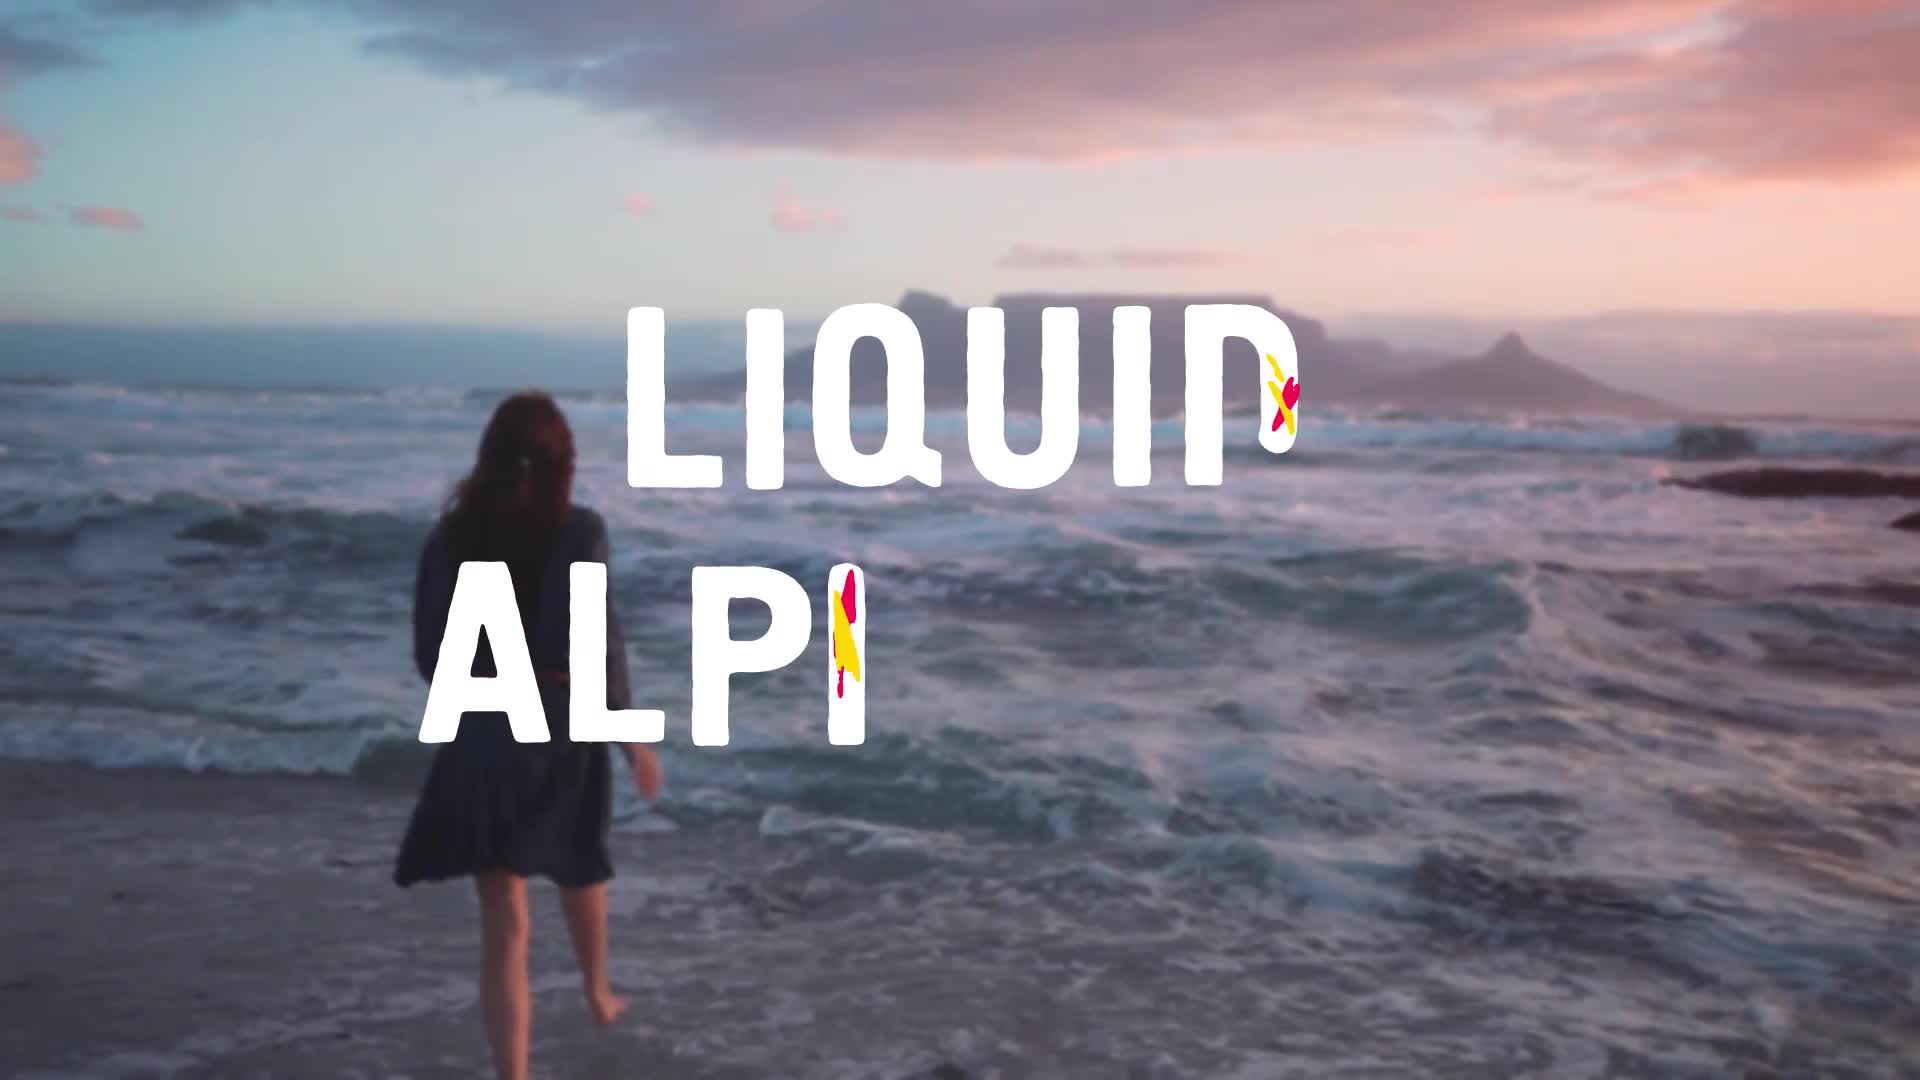 Liquid Alphabet | Premiere Pro MOGRT Videohive 32271700 Premiere Pro Image 1